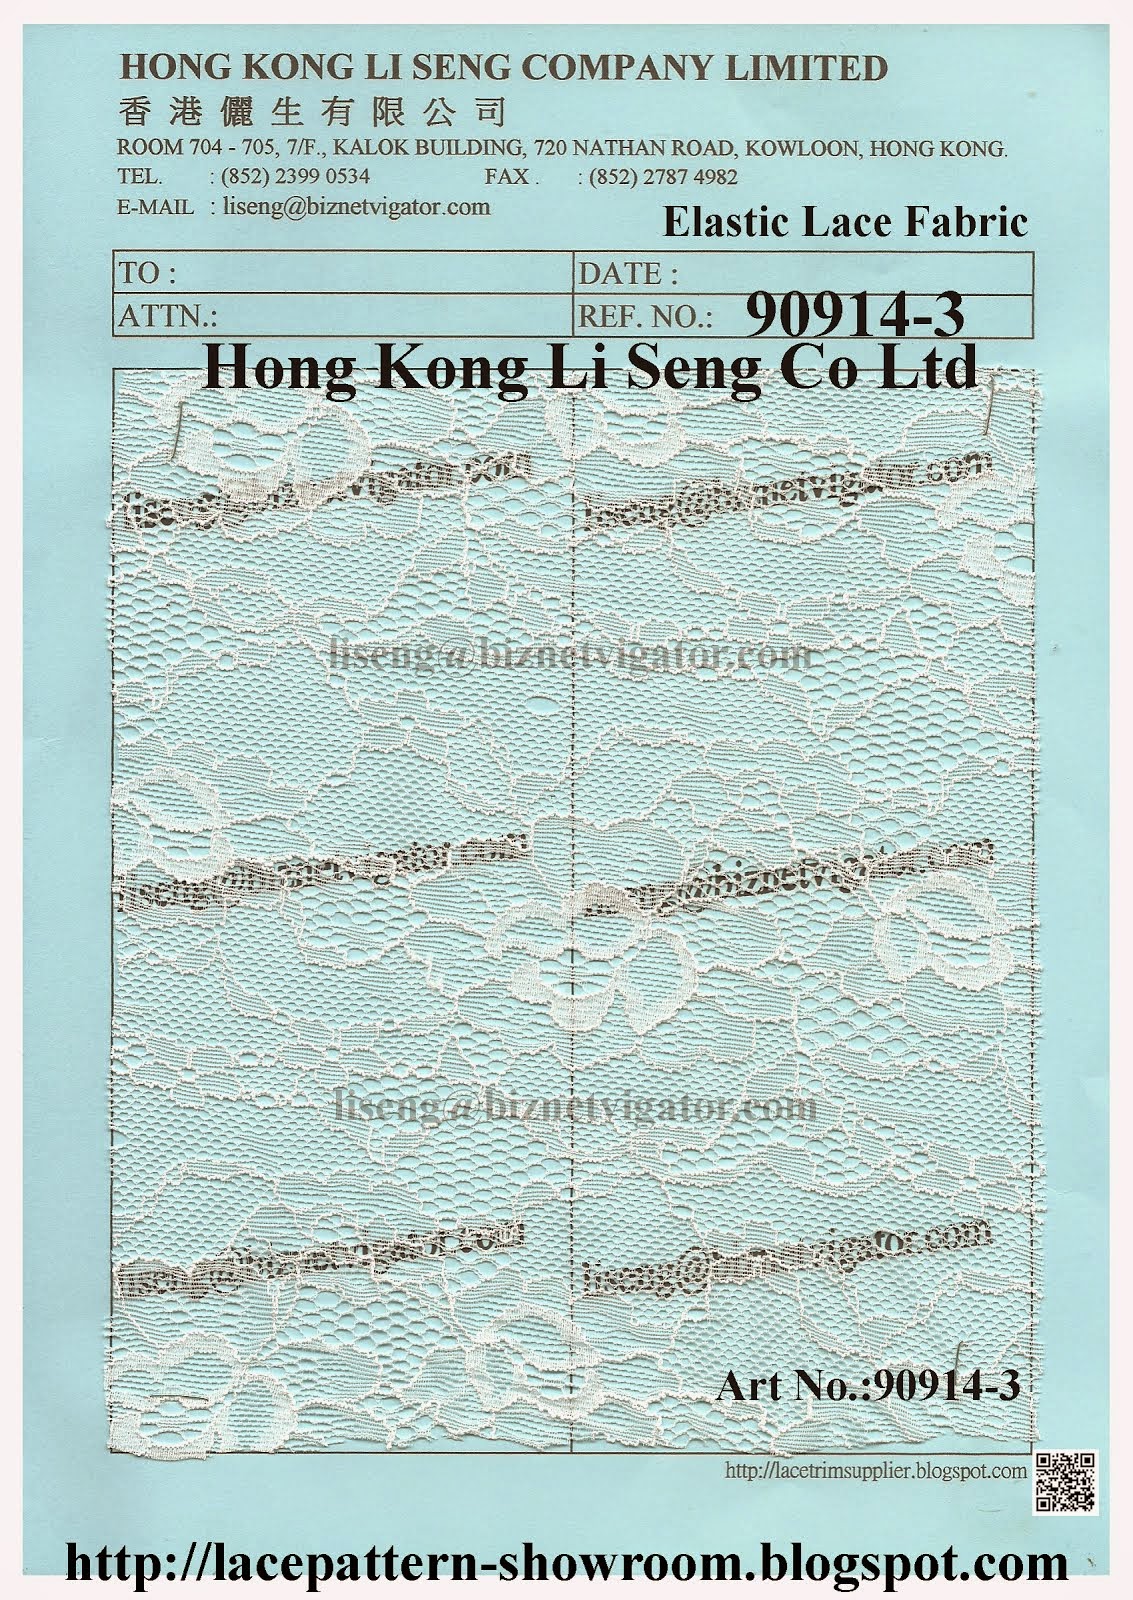 Elastic Lace Fabric Wholesale - Hong Kong Li Seng Co Ltd